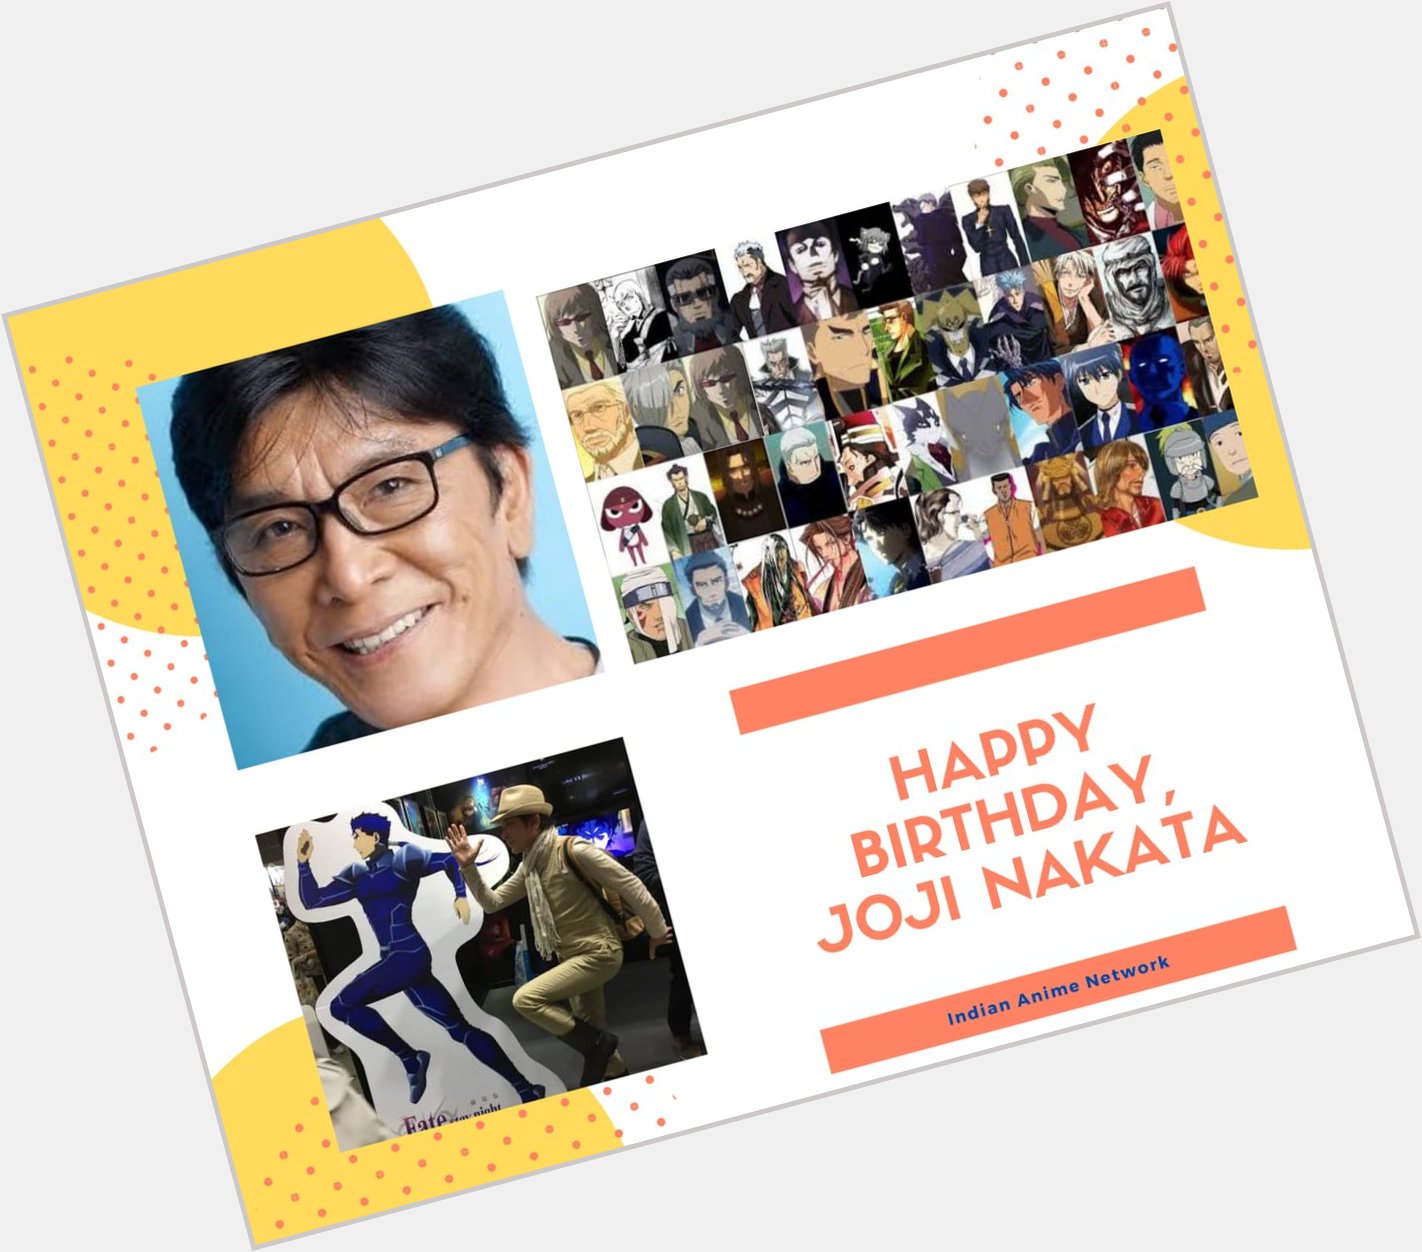 Happy Birthday, Joji Nakata  